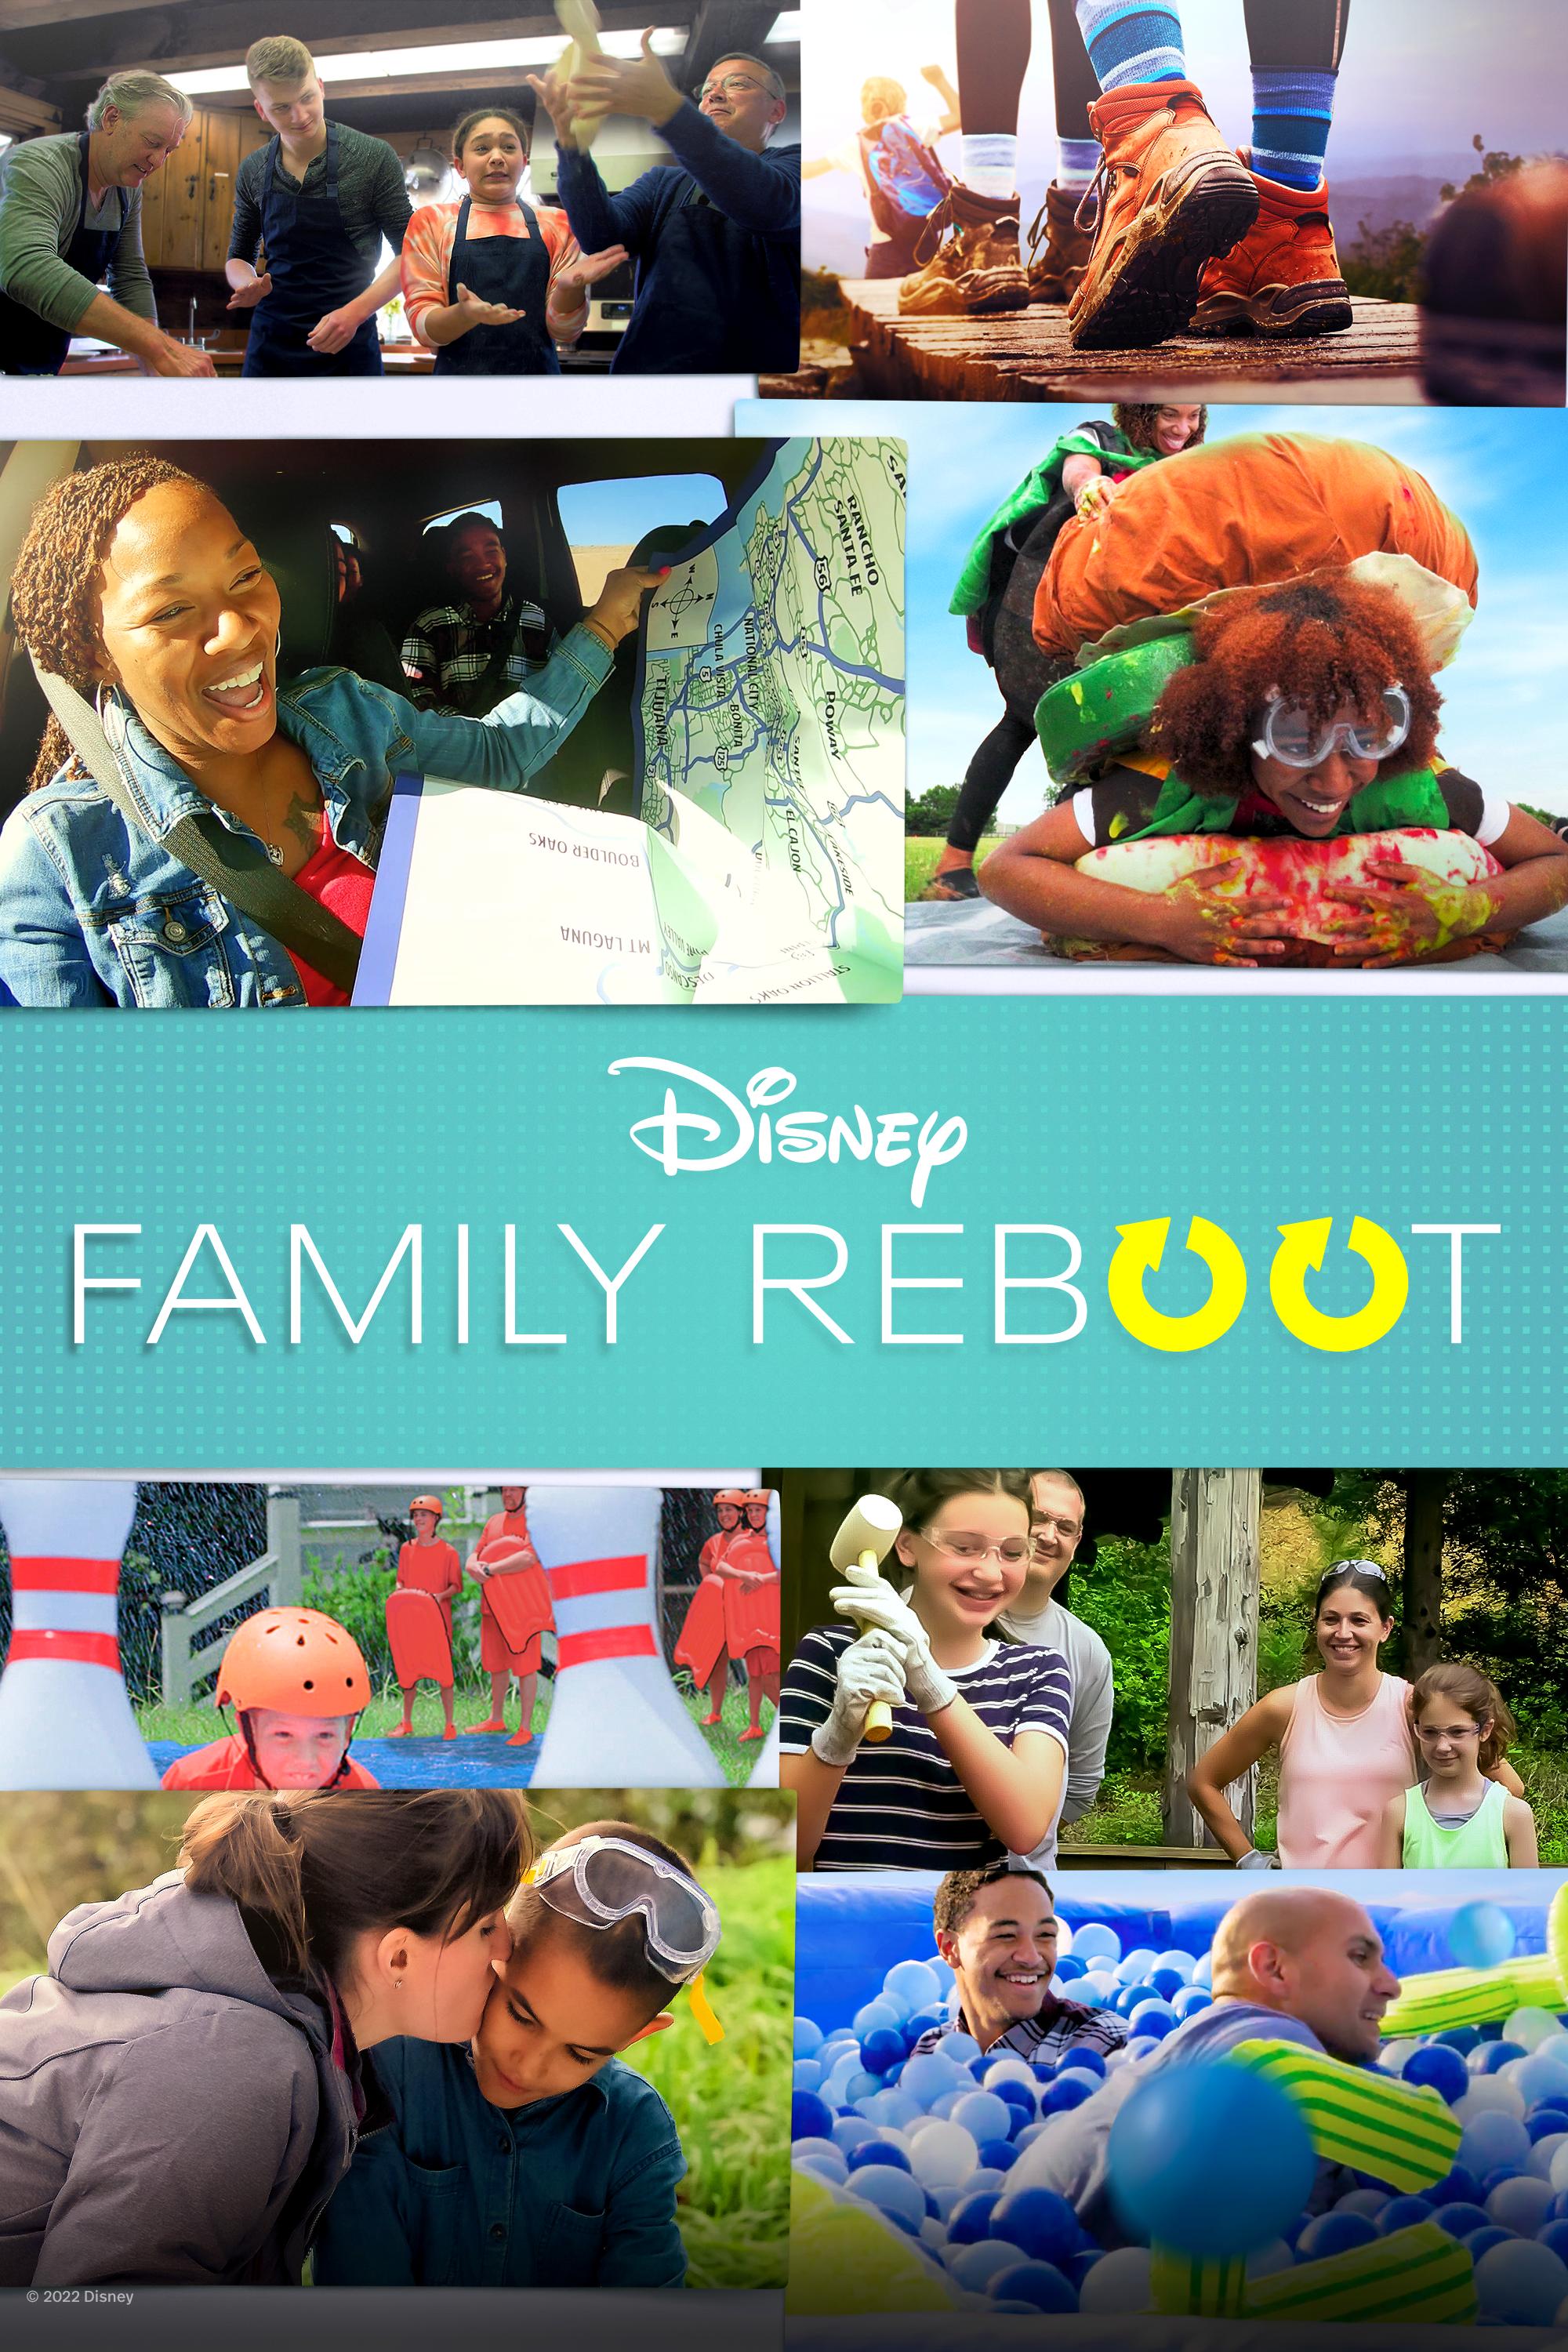 TV ratings for Family Reboot in Japan. Disney+ TV series